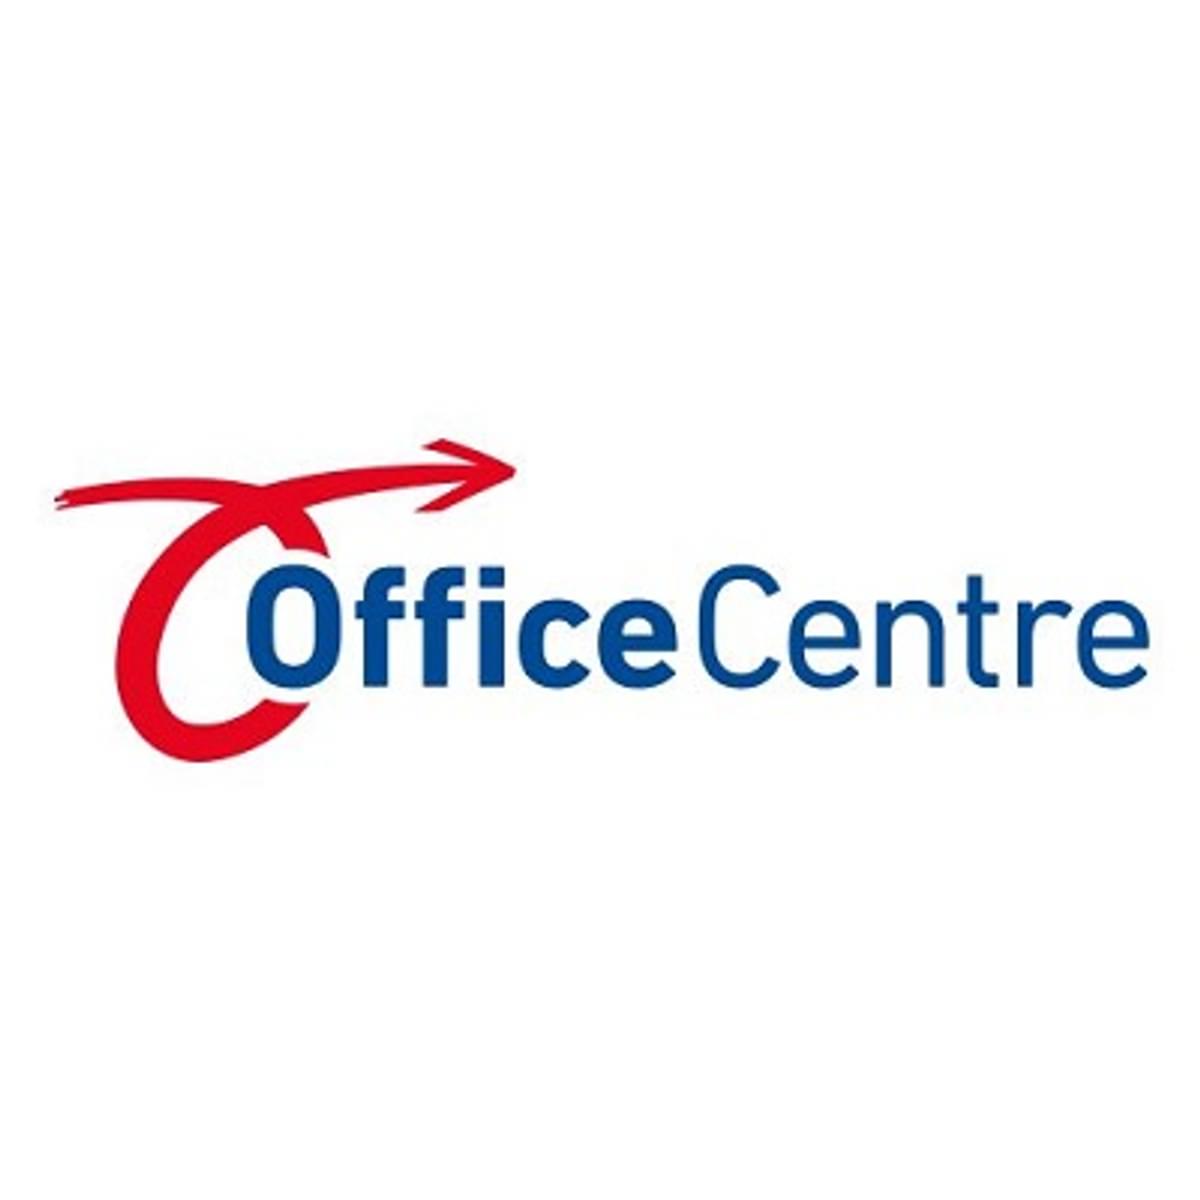 Moederorganisatie Office Centre en Staples Office Centre krijgt nieuwe eigenaar image